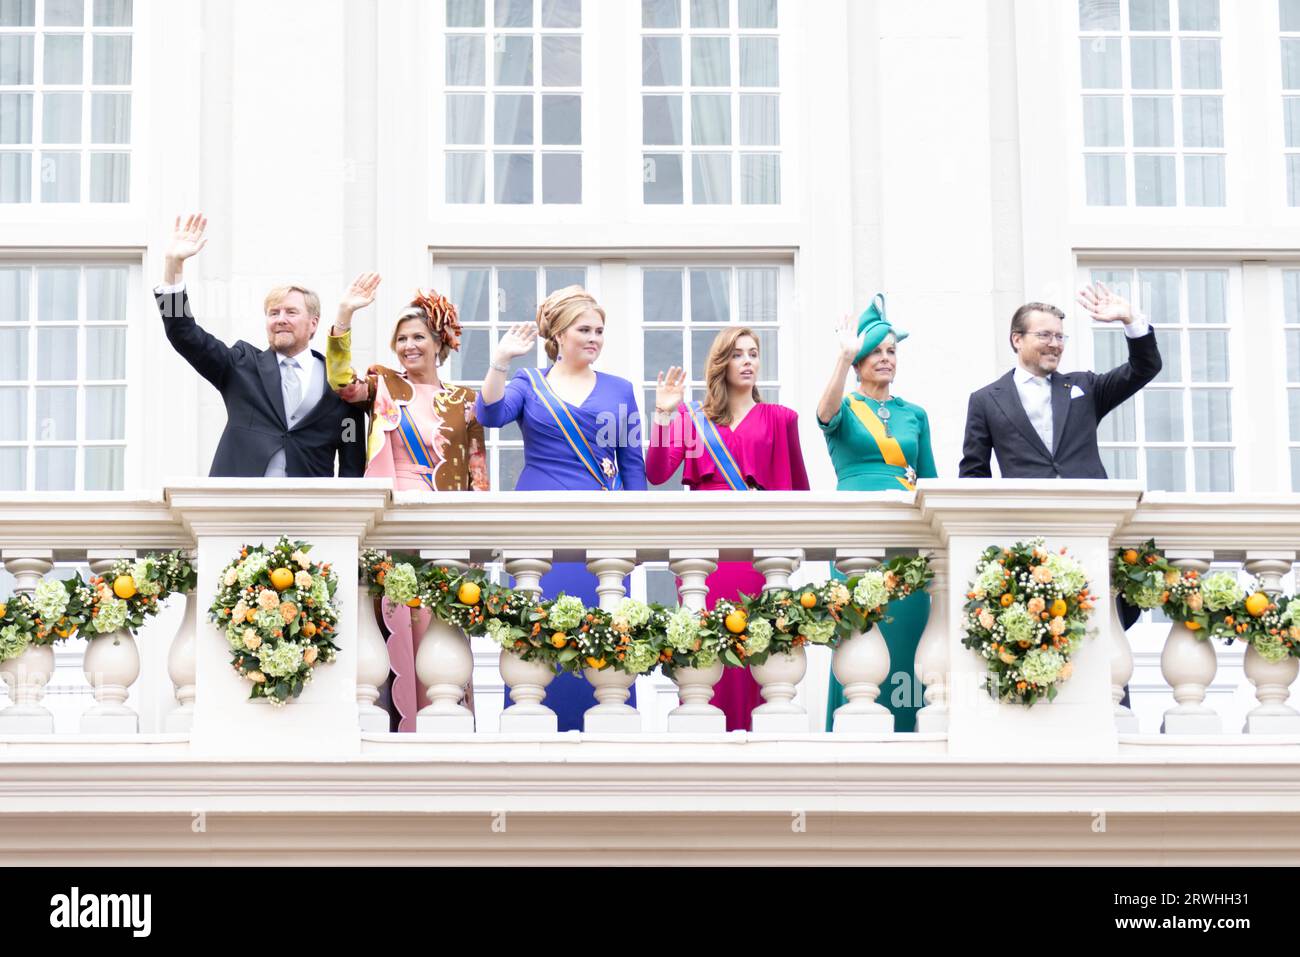 La Haye, pays-Bas. 19 septembre 2023. Le roi des pays-Bas Willem-Alexander, la reine Maxima, la princesse Amalia, la princesse Alexia, la princesse Laurentien et le prince Constantijn (de gauche à droite) font signe aux gens sur le balcon du palais Noodeinde à la Haye, aux pays-Bas, le 19 septembre 2023. Le troisième mardi de septembre est la fête du Prince aux pays-Bas. Il marque l'ouverture de la saison parlementaire néerlandaise et, ce jour-là, le monarque régnant expose les plans du gouvernement pour l'année à venir. Crédit : Sylvia Lederer/Xinhua/Alamy Live News Banque D'Images